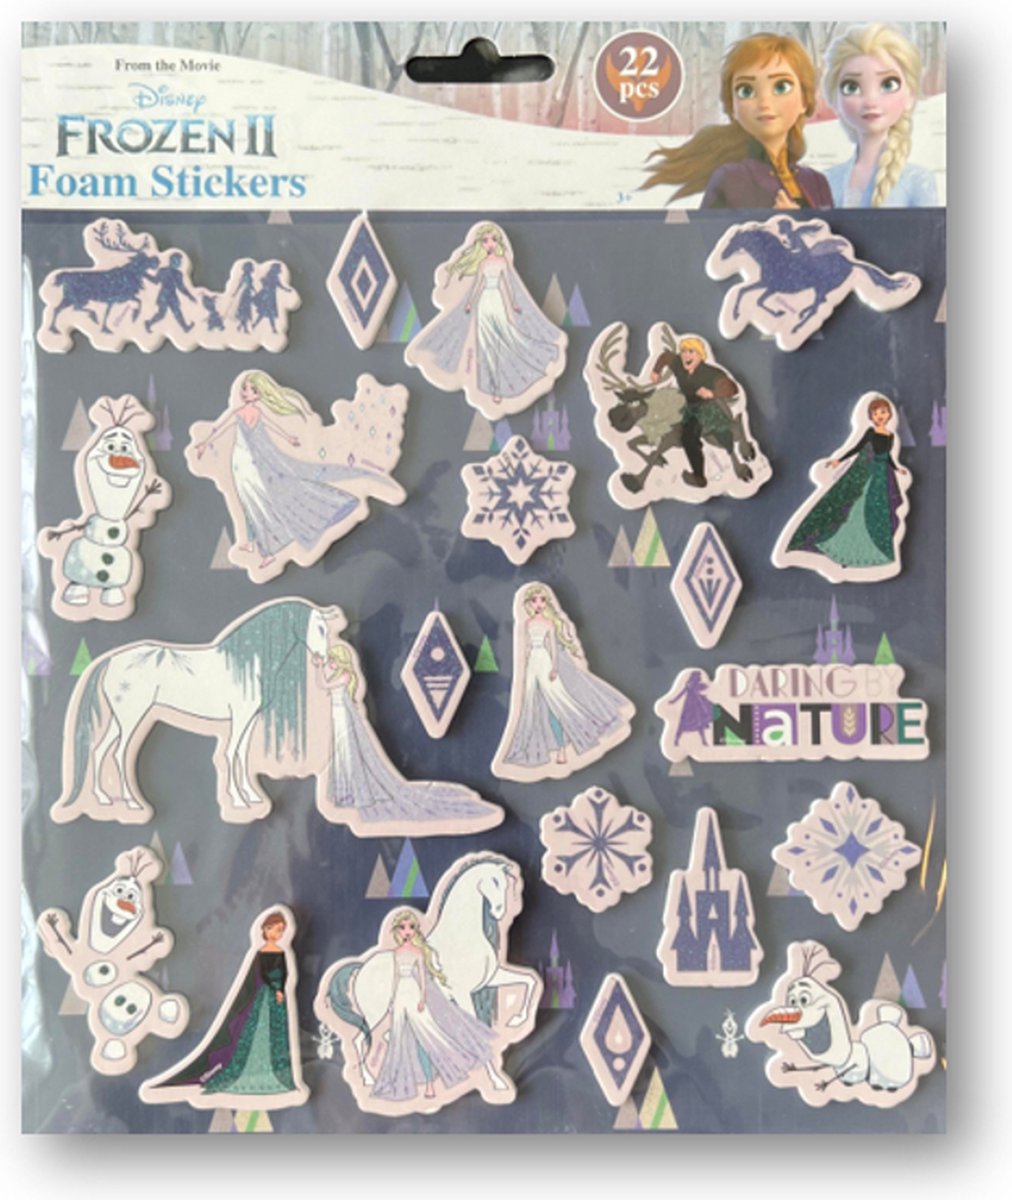 Foam Stickers - Frozen || stickers - Stickers - Frozen Foam stickers - Kinderen - 22 stuks - Plakken - Hobbypakket - Disney - Disney Frozen || - 3D stickers - 22 stuks Foam stickers.